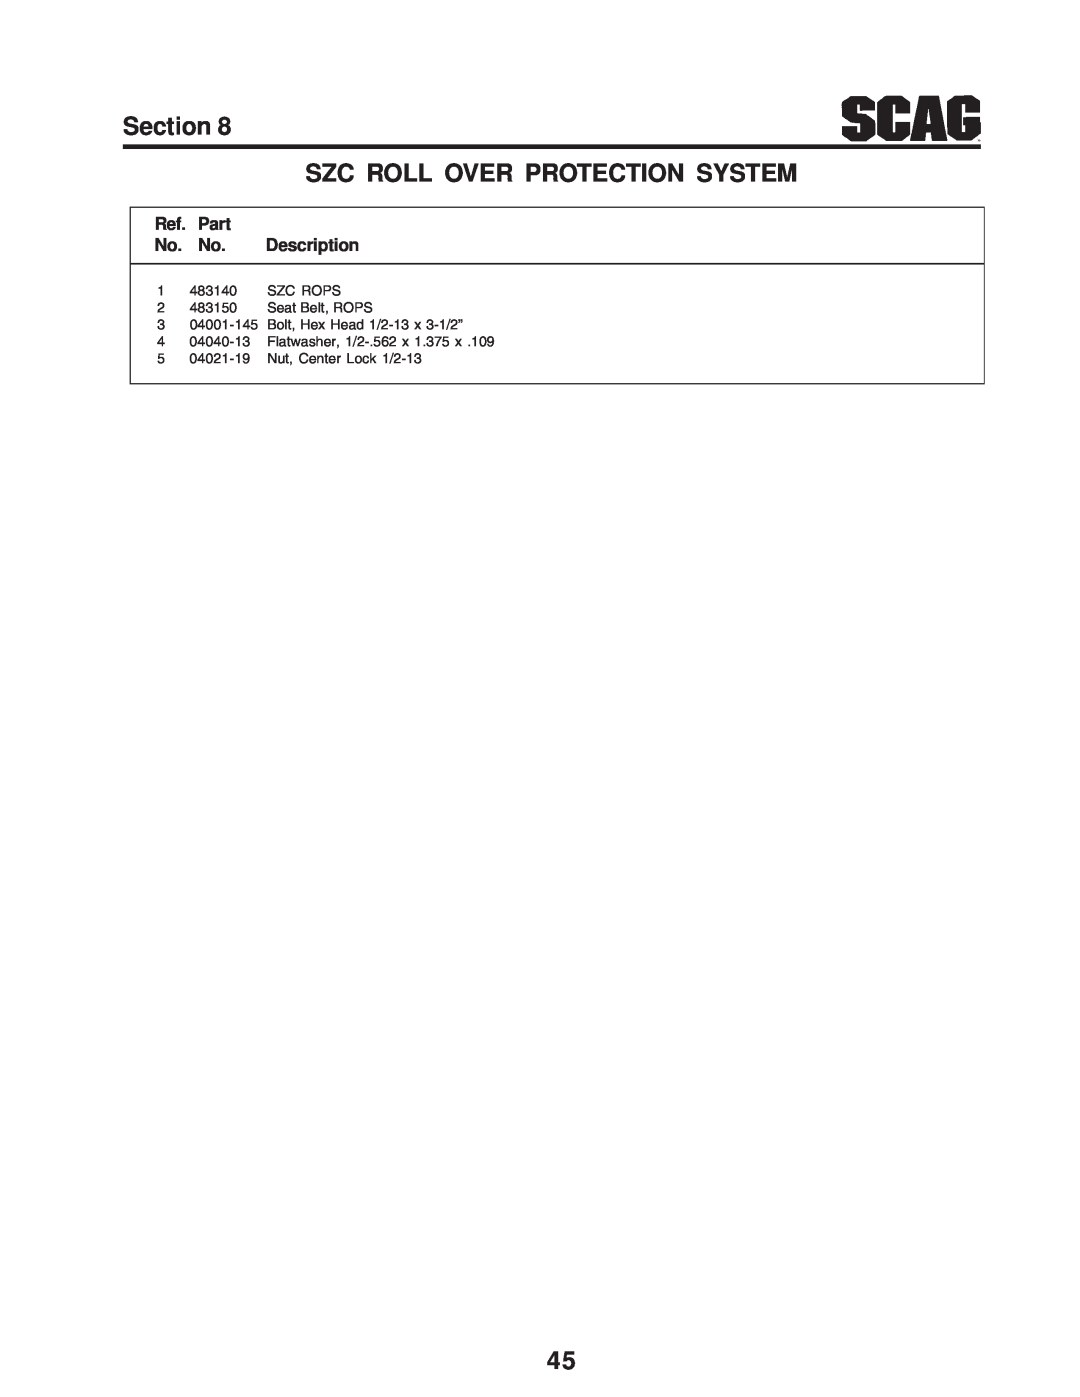 Scag Power Equipment manual Ref. Part No. No. Description, 1 483140 SZC ROPS 2 483150 Seat Belt, ROPS 